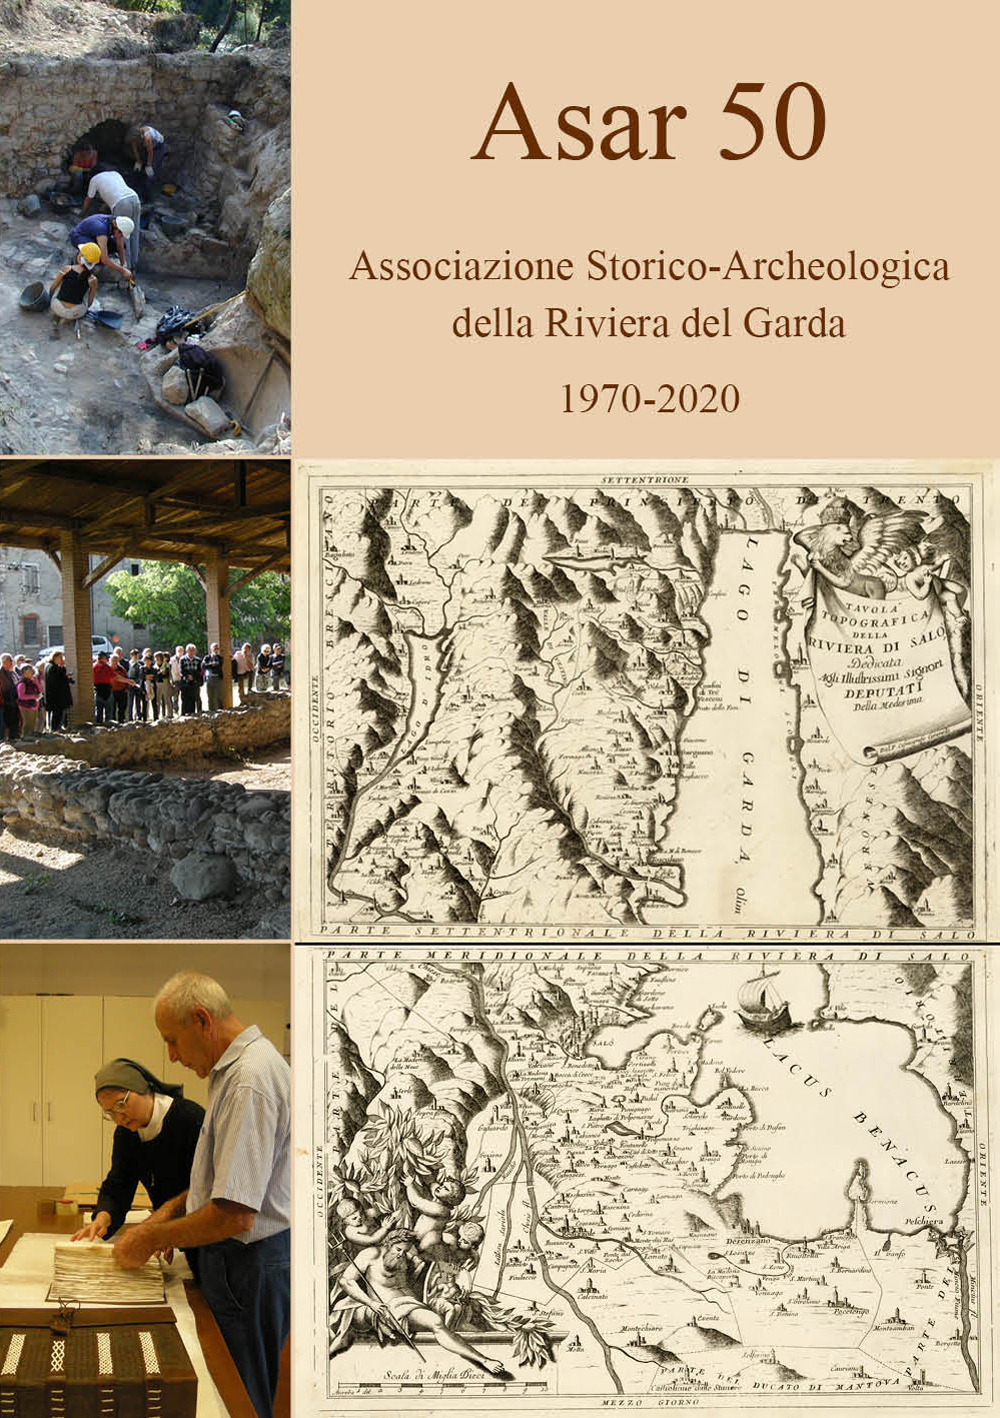 ASAR 50. Associazione Storico-Archeologica della Riviera del Garda 1970-2020